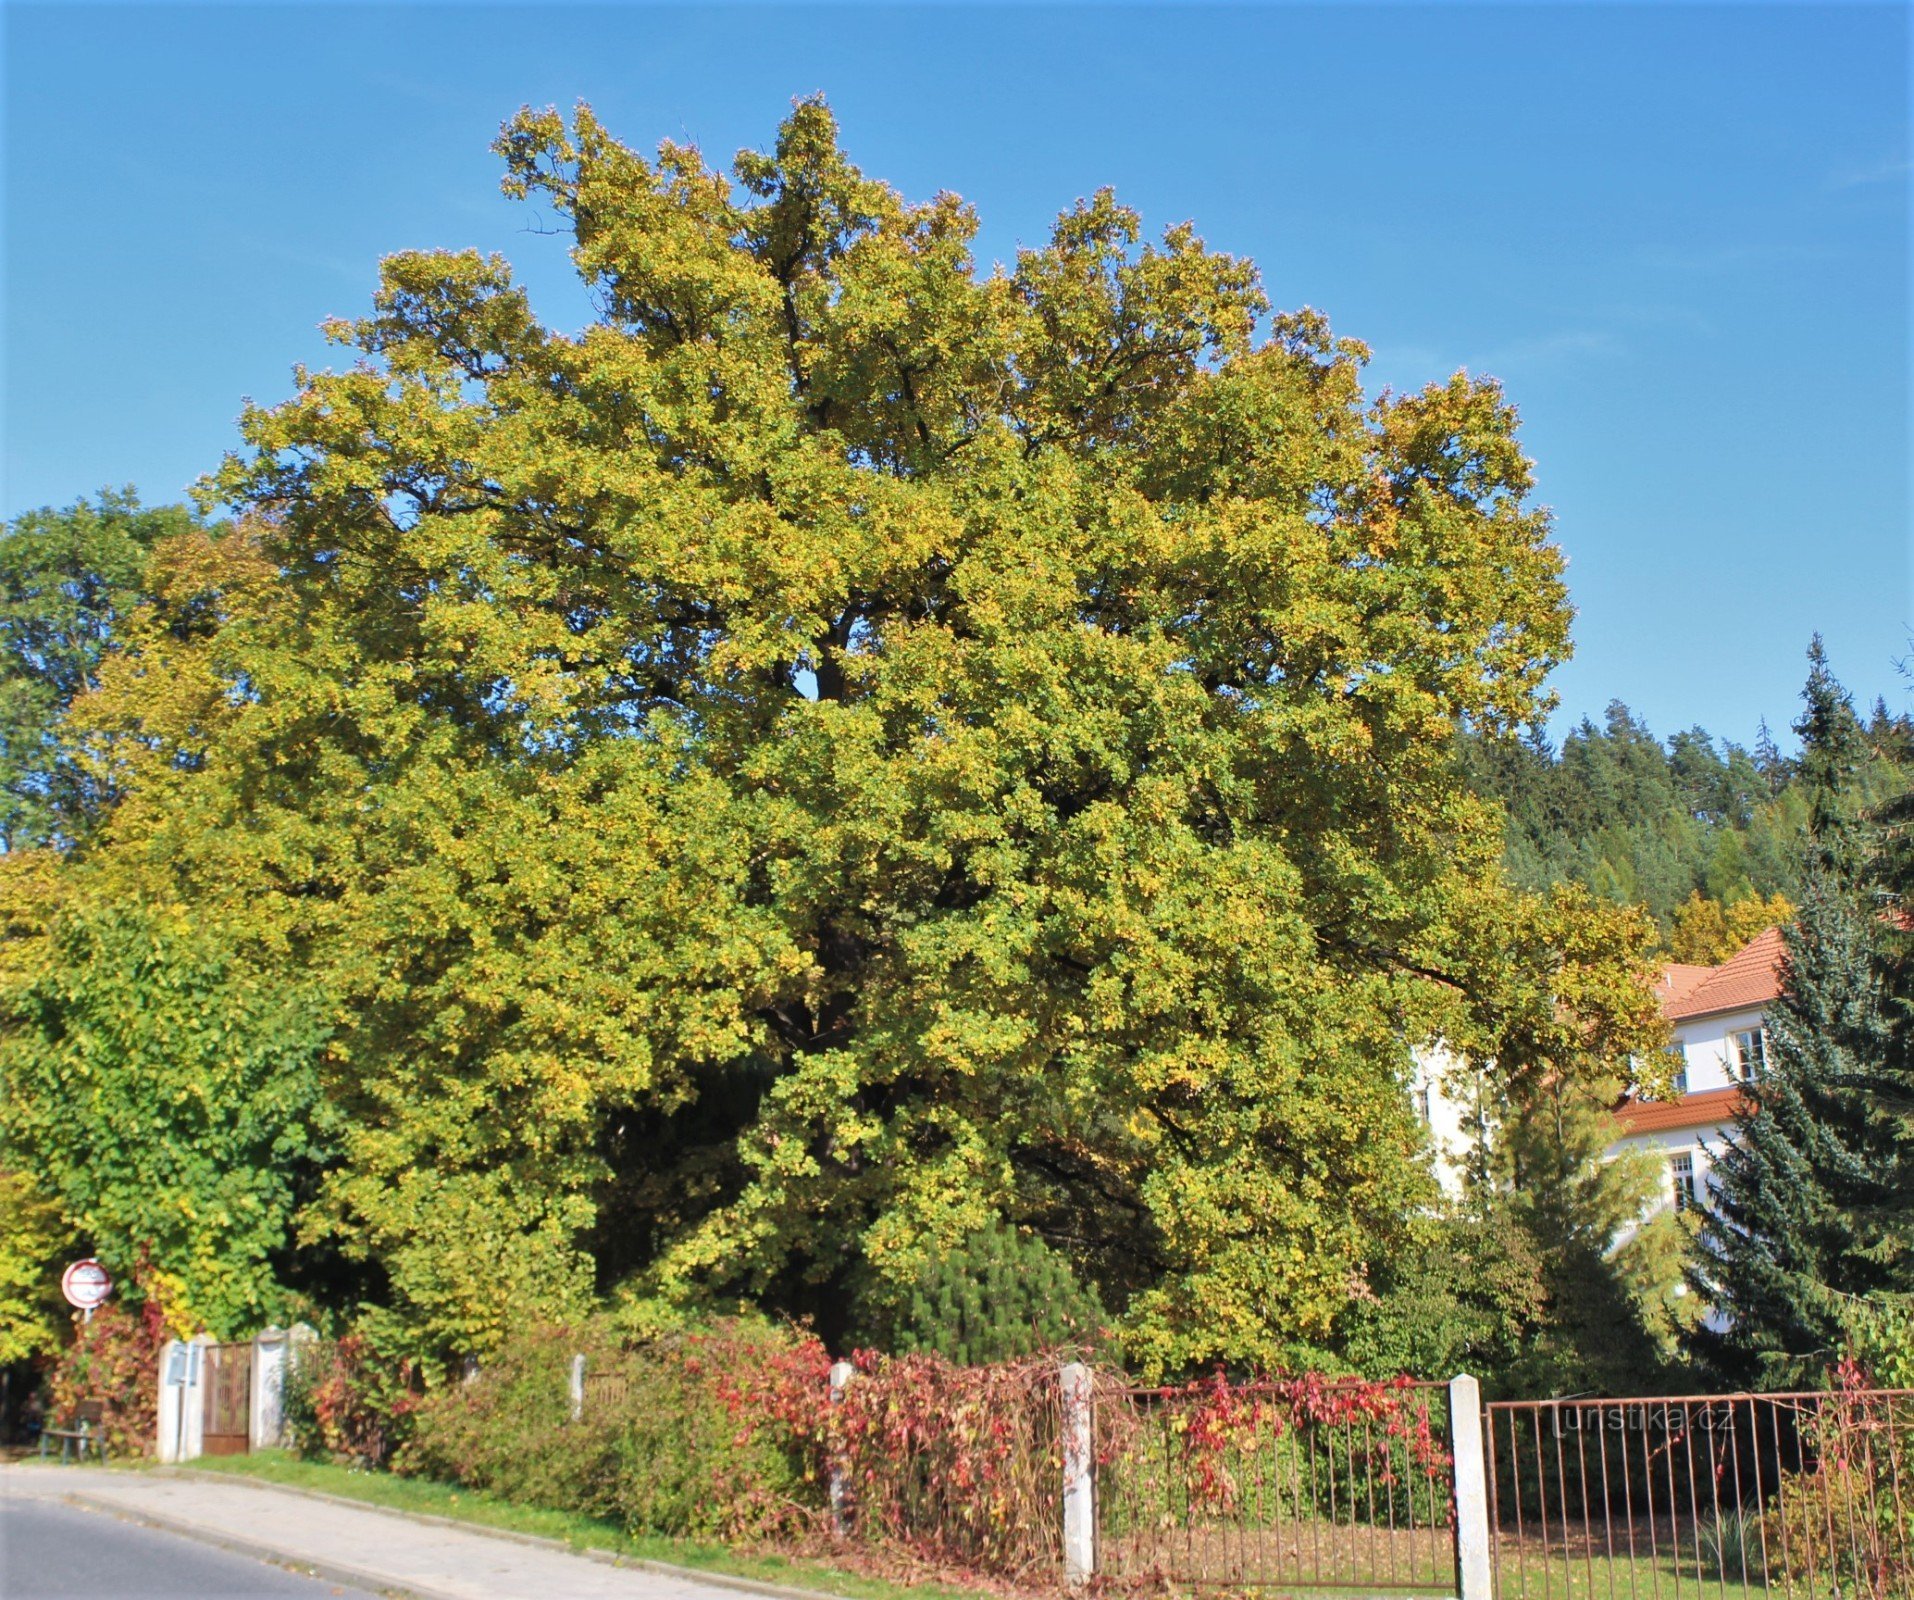 Vista general del árbol conmemorativo